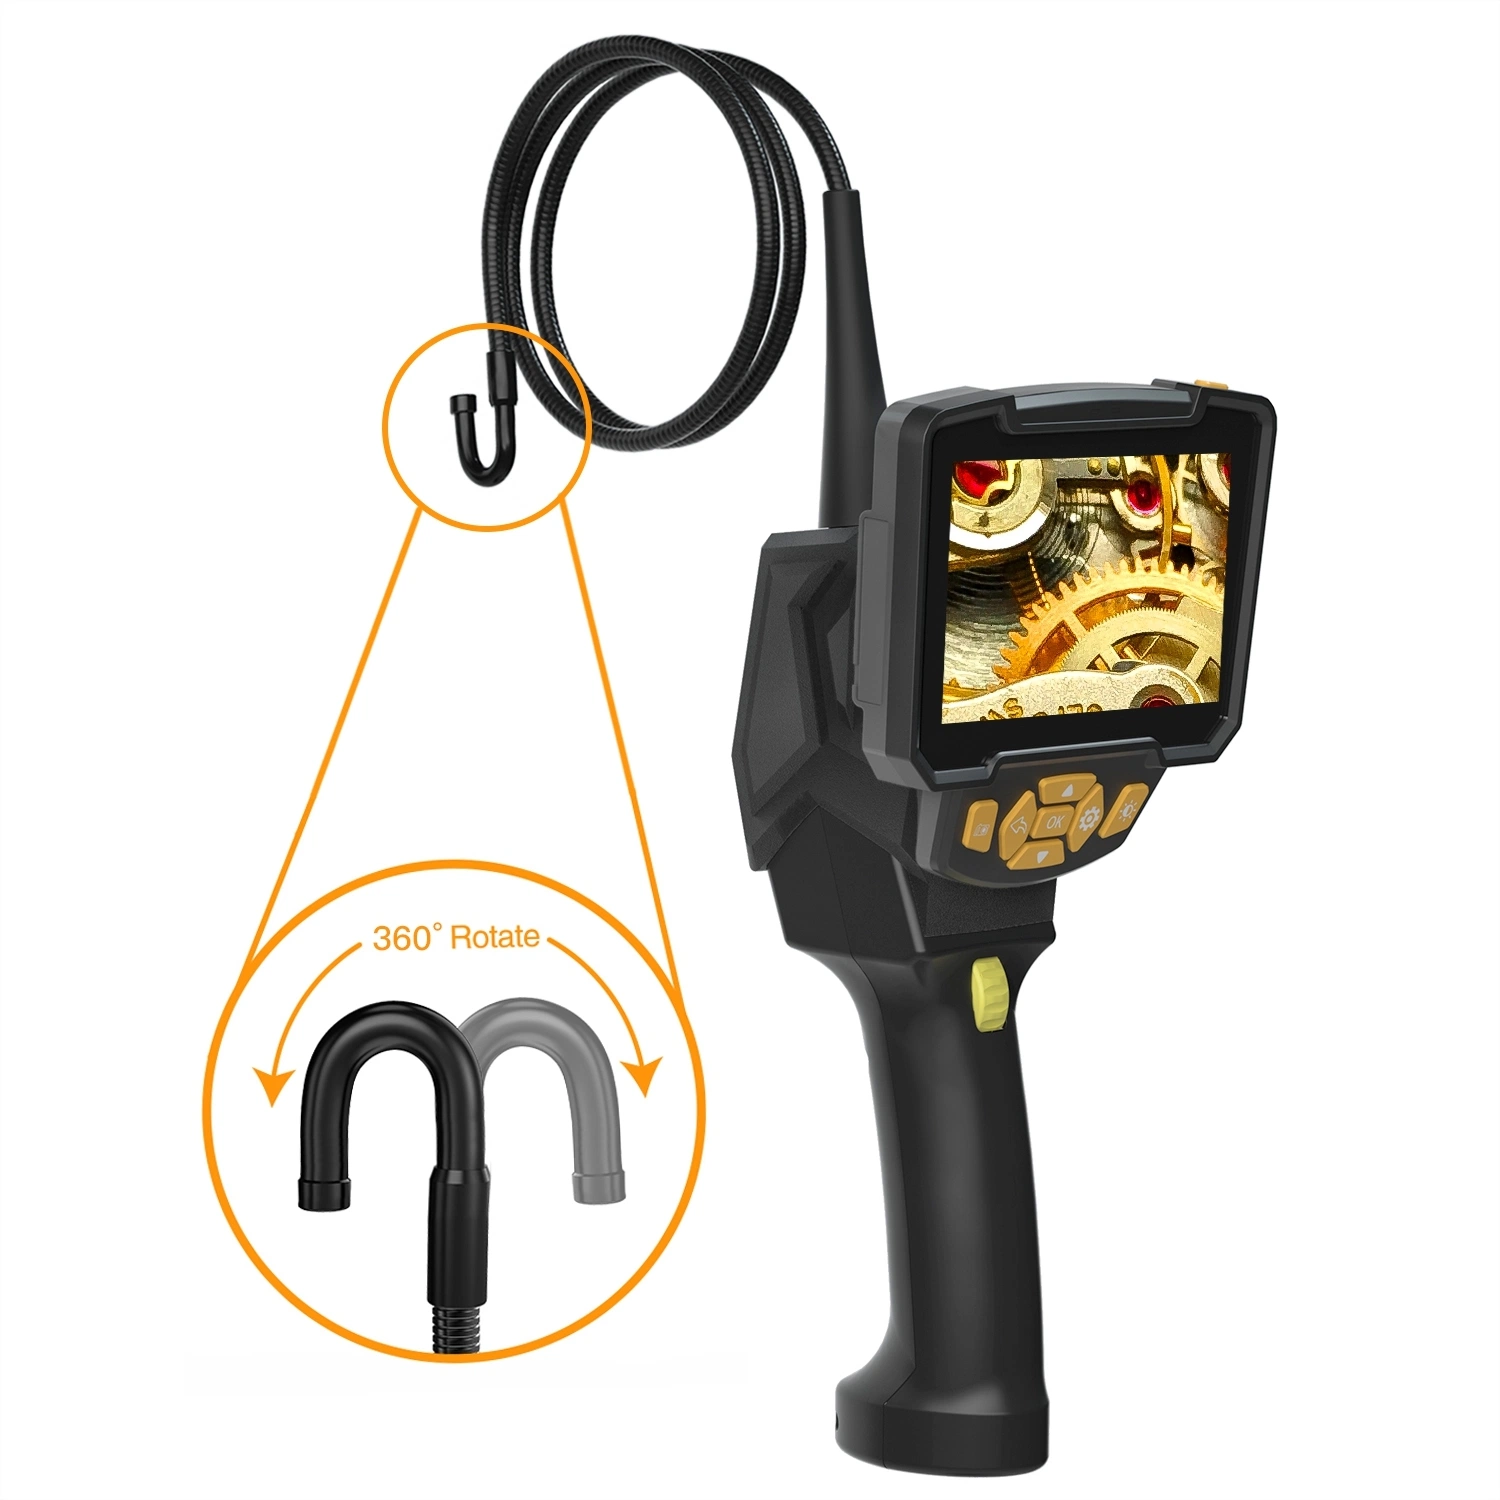 Caméra d'endoscope rotatif pour smartphones Android, PC, Micro USB, vidéo à 360 degrés, caméscope endoscopique.